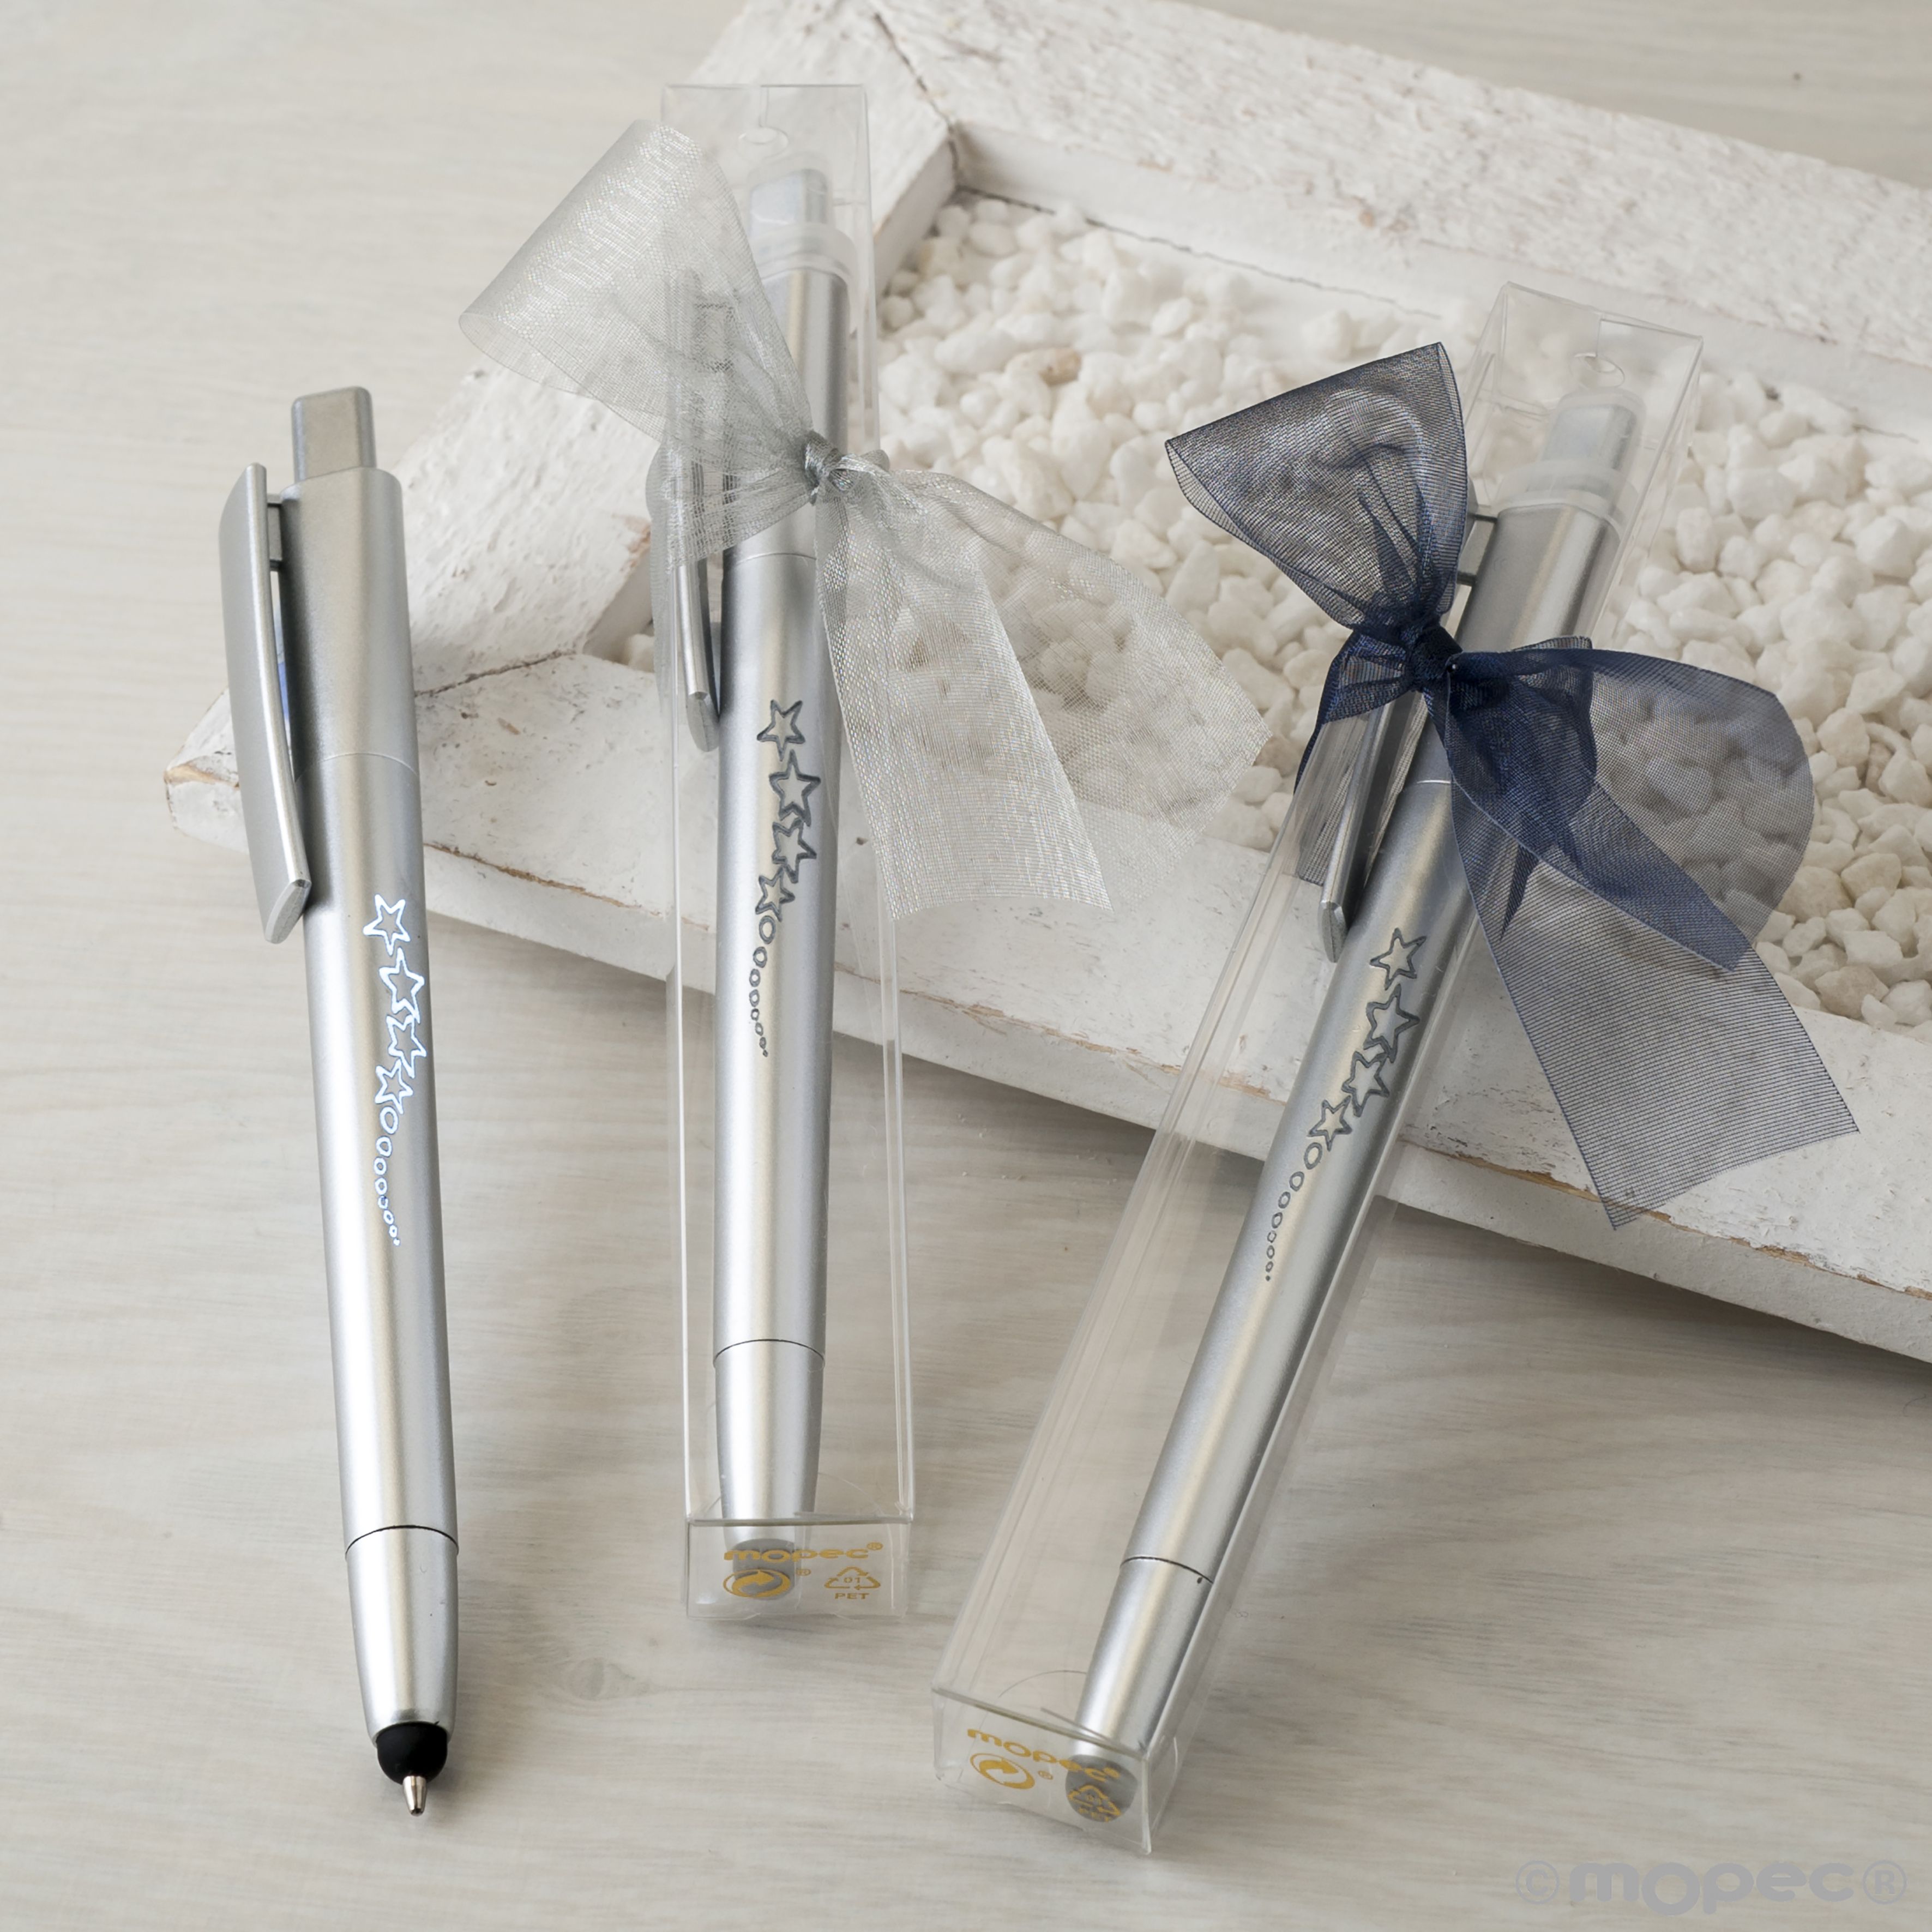 Bolígrafos con cristales de colores puntero táctil y funda detalles para Bodas